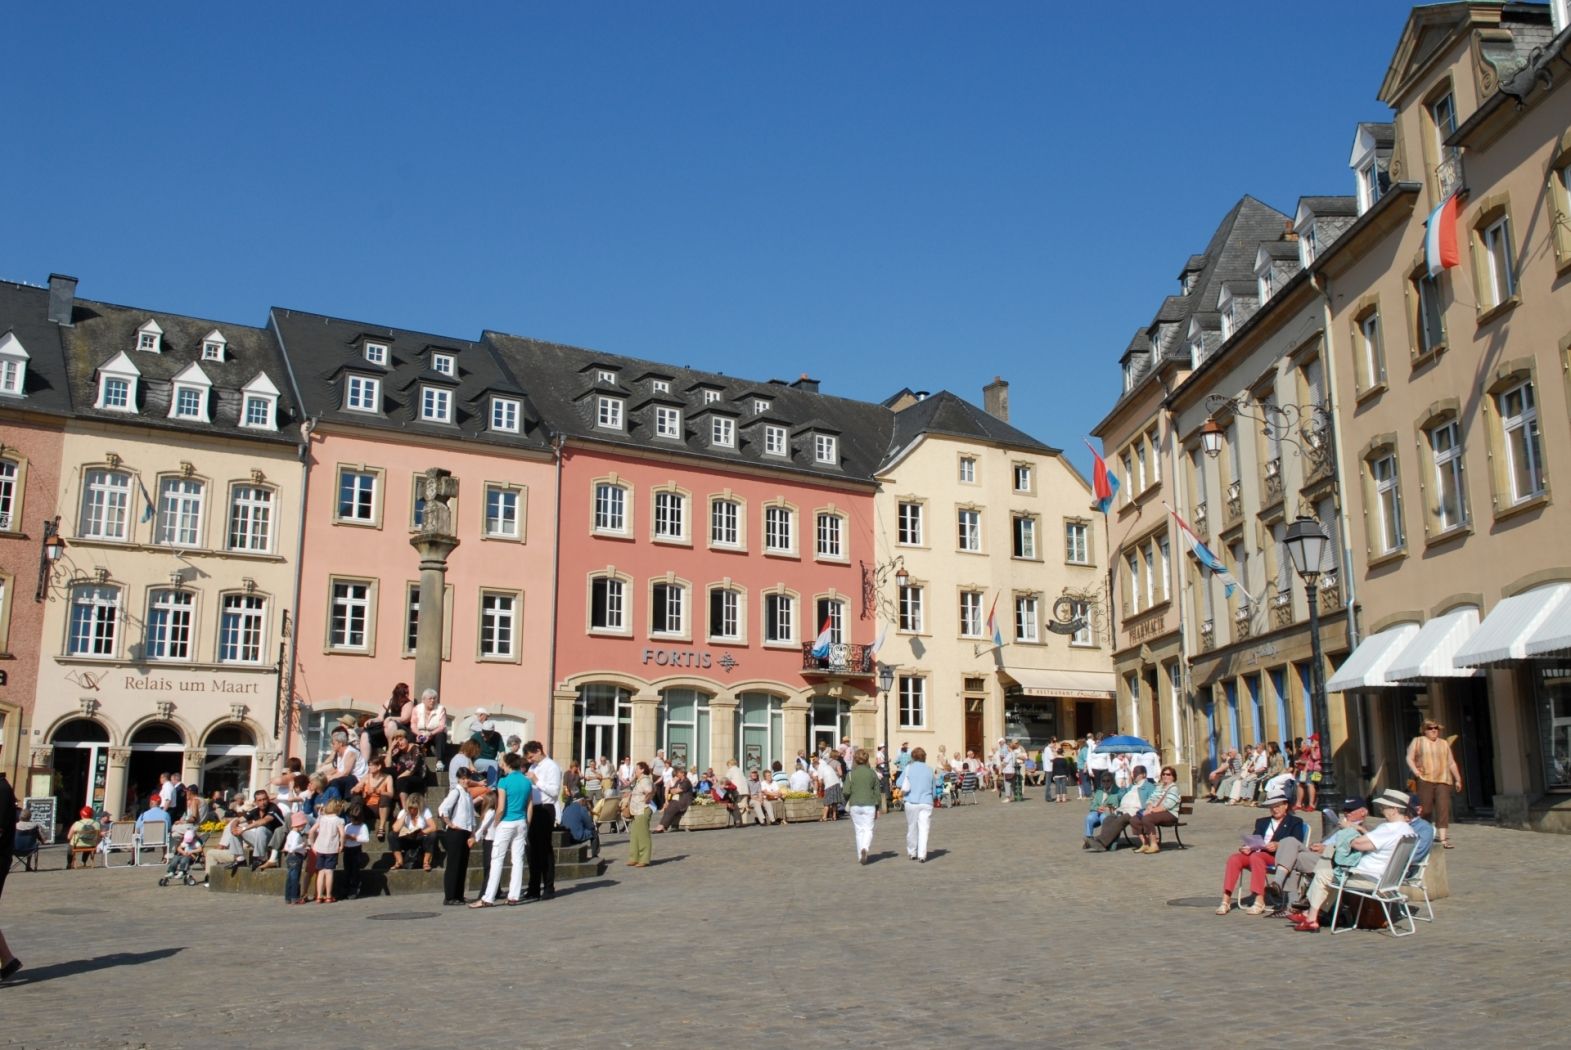 Market square with "Denzelt" Echternach